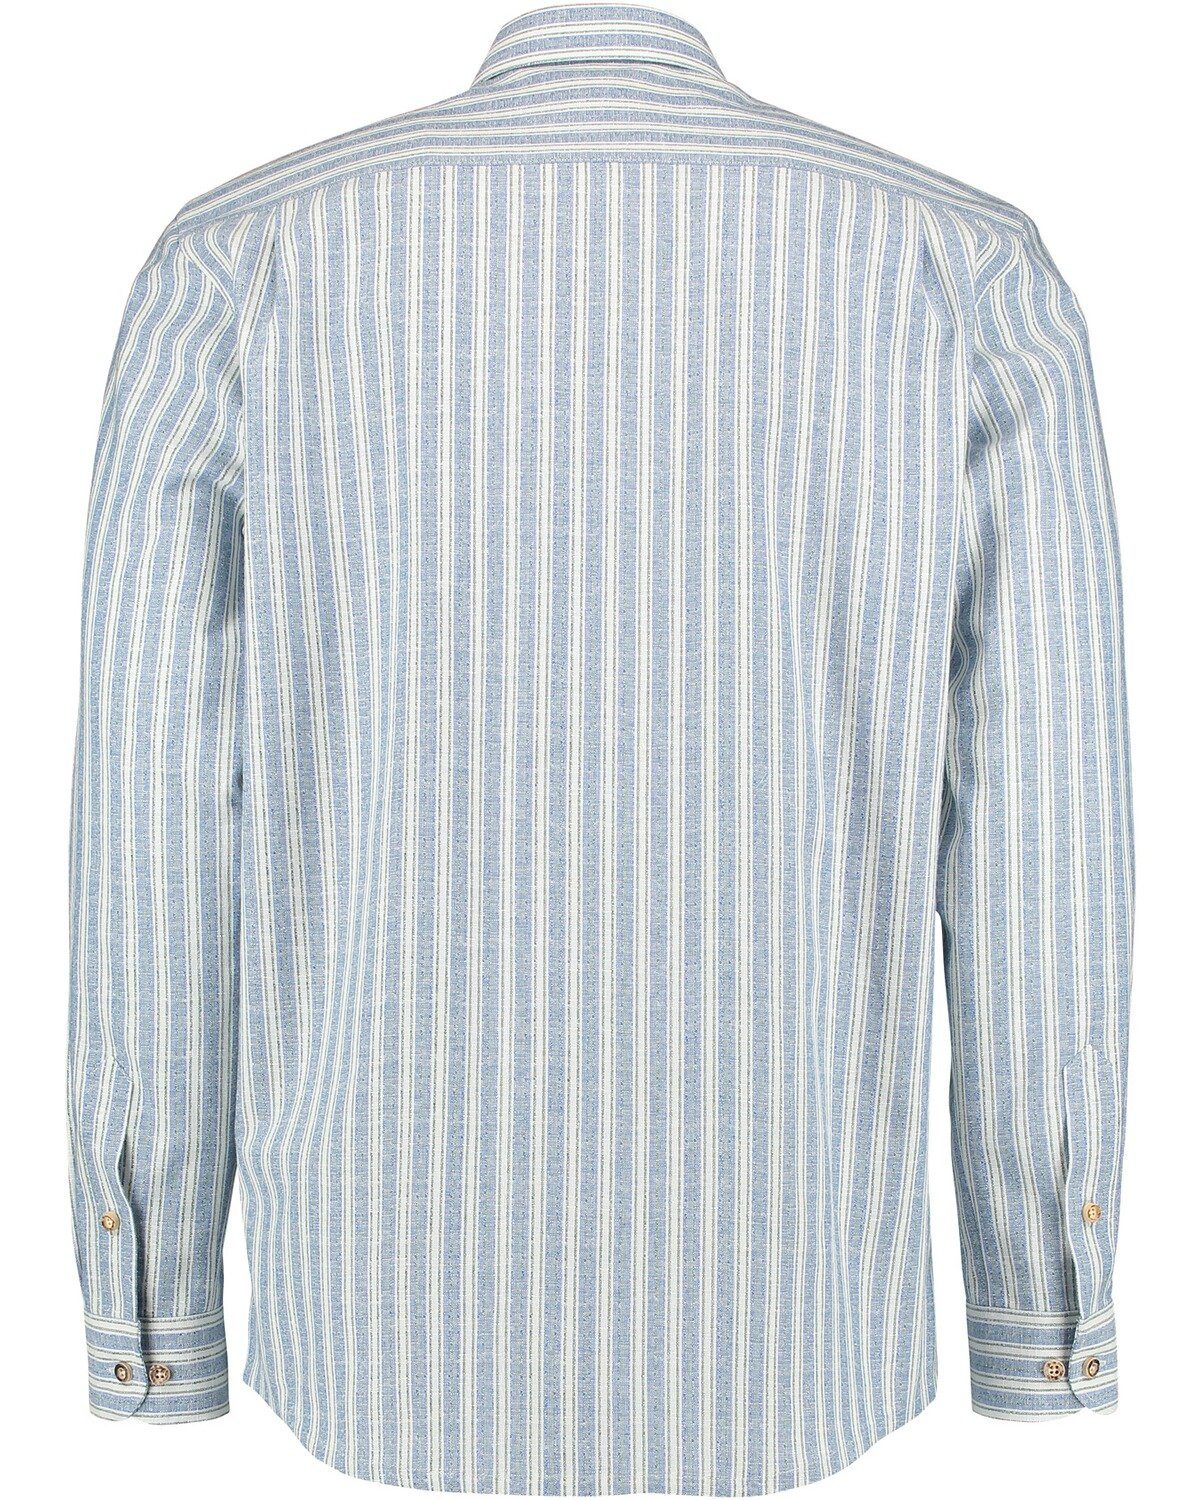 Luis Steindl Trachtenhemd Trachtenhemd Streifen Blau mit